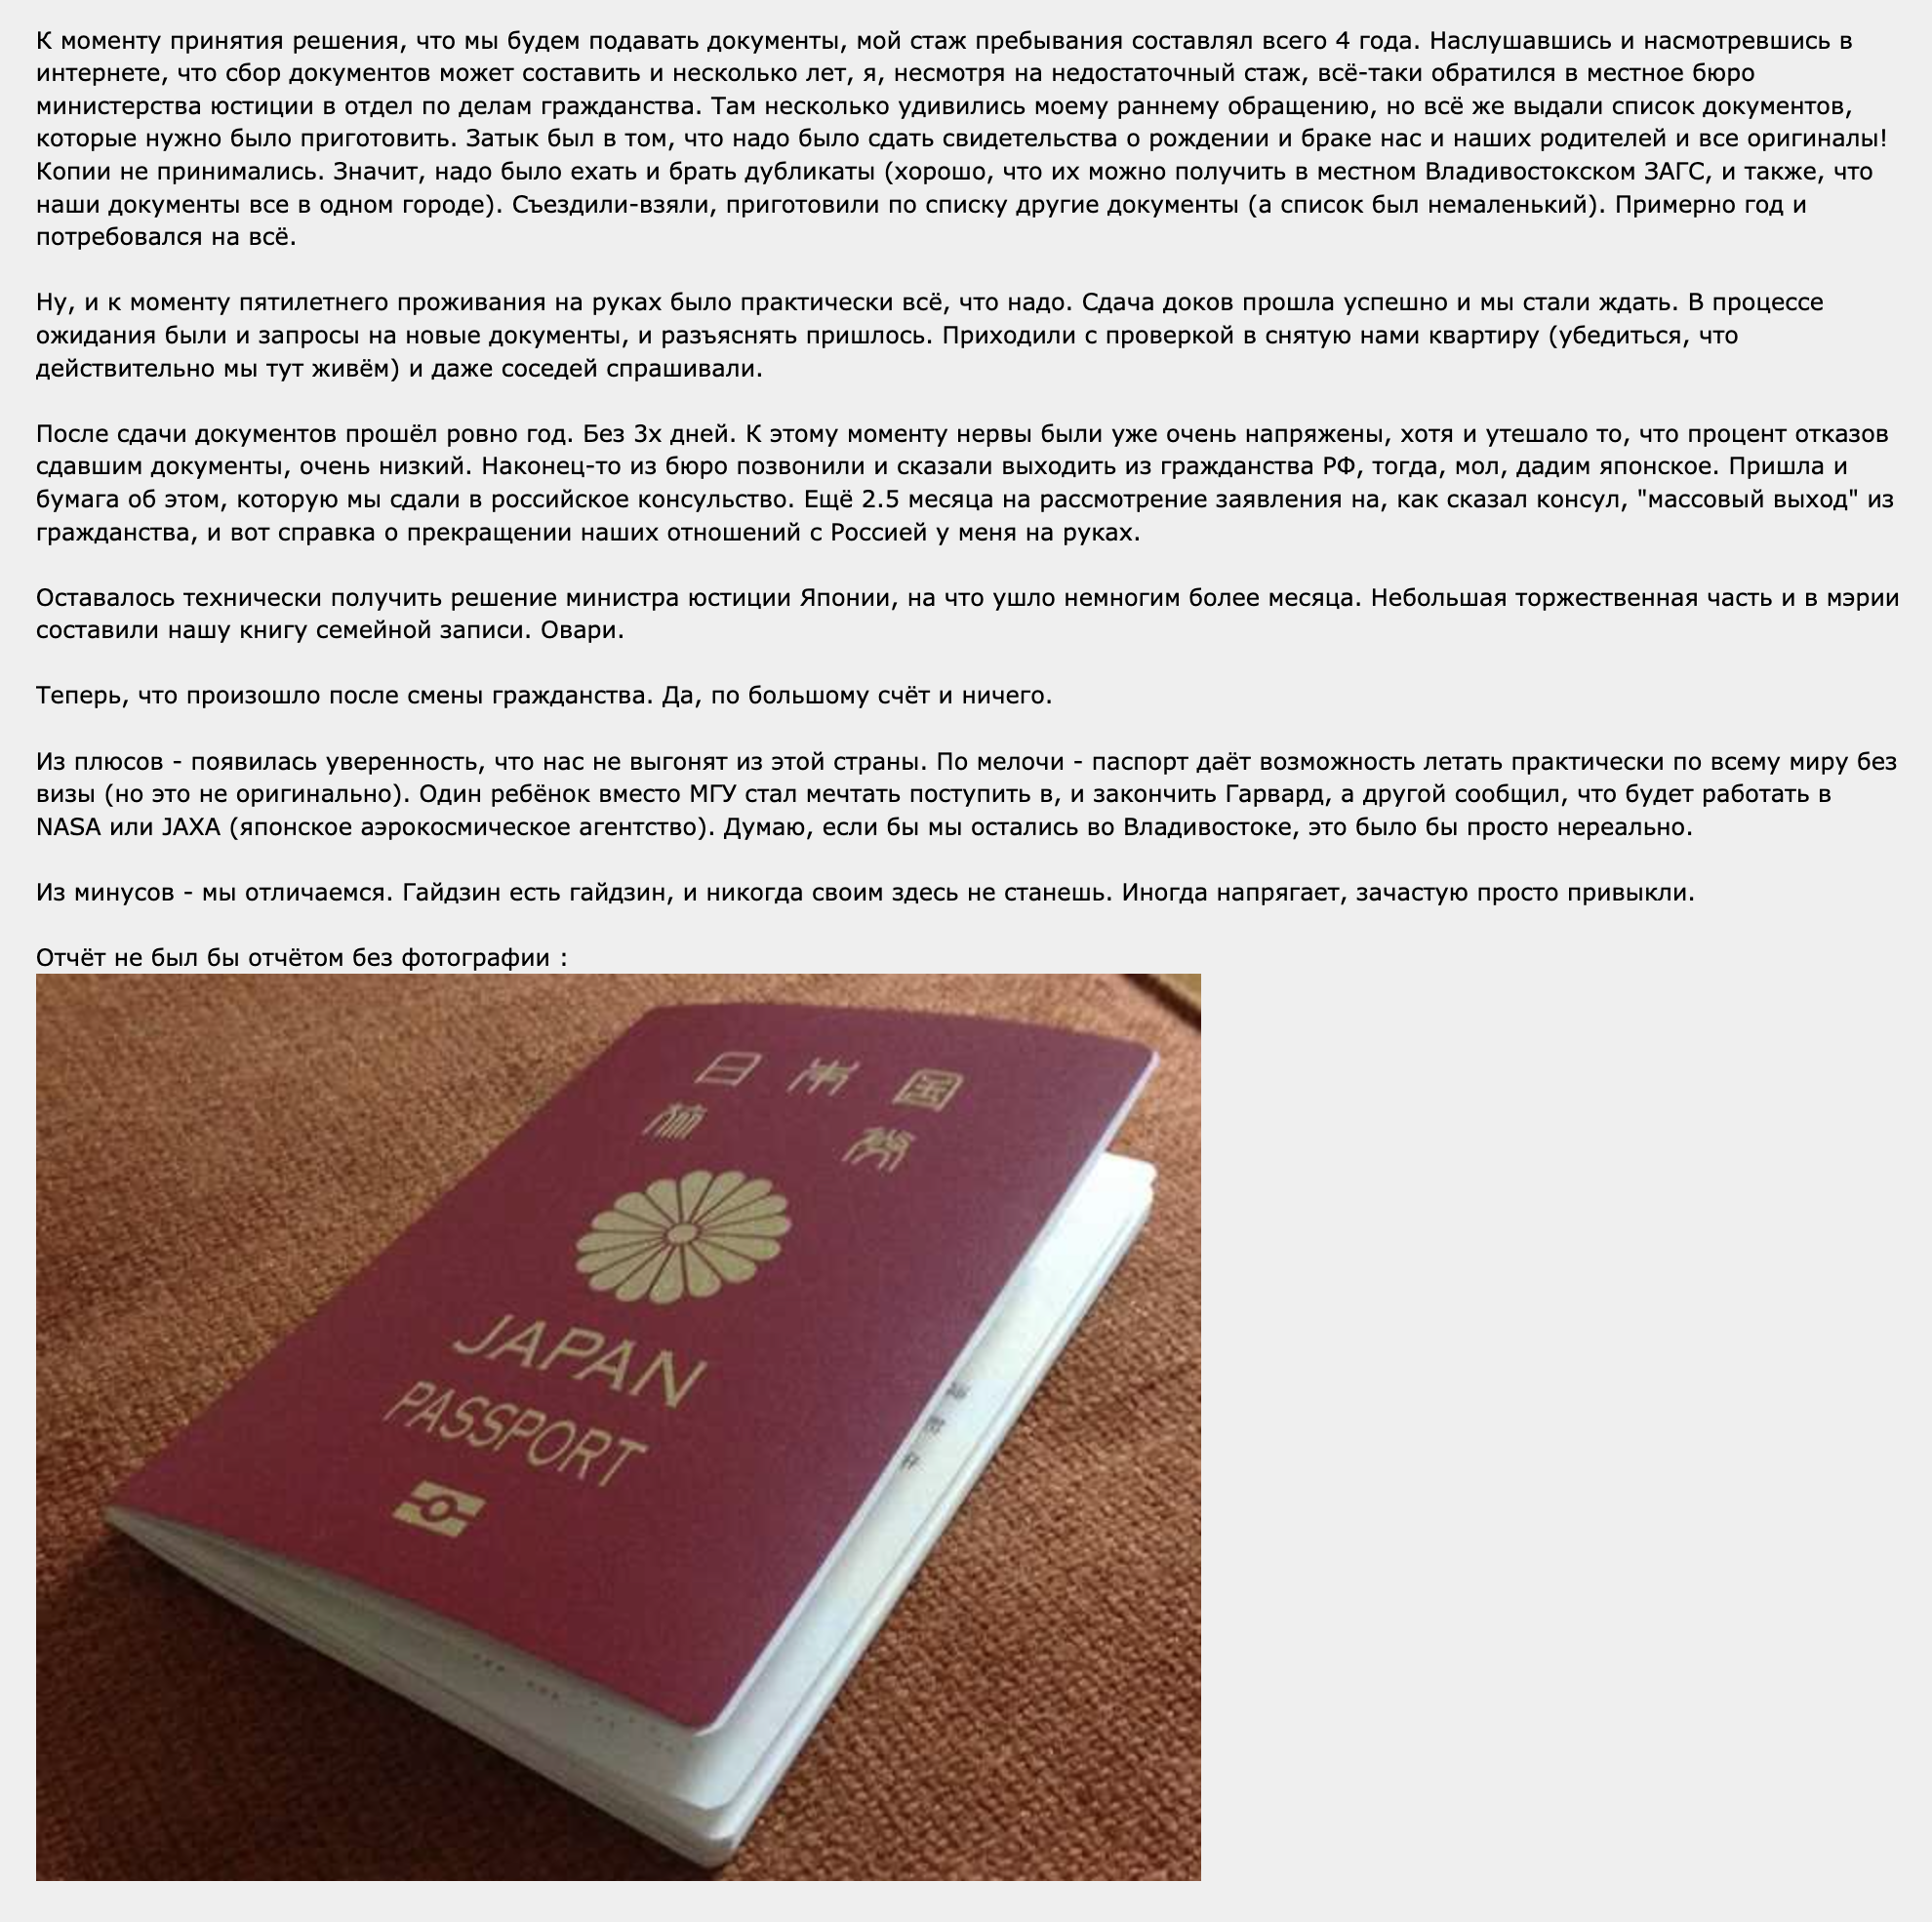 По словам россиянина, который получил гражданство Японии, плюс в том, что появилась уверенность: из страны не выгонят. Паспорт дает возможность летать практически по всему миру без визы. Источник: forum.awd.ru